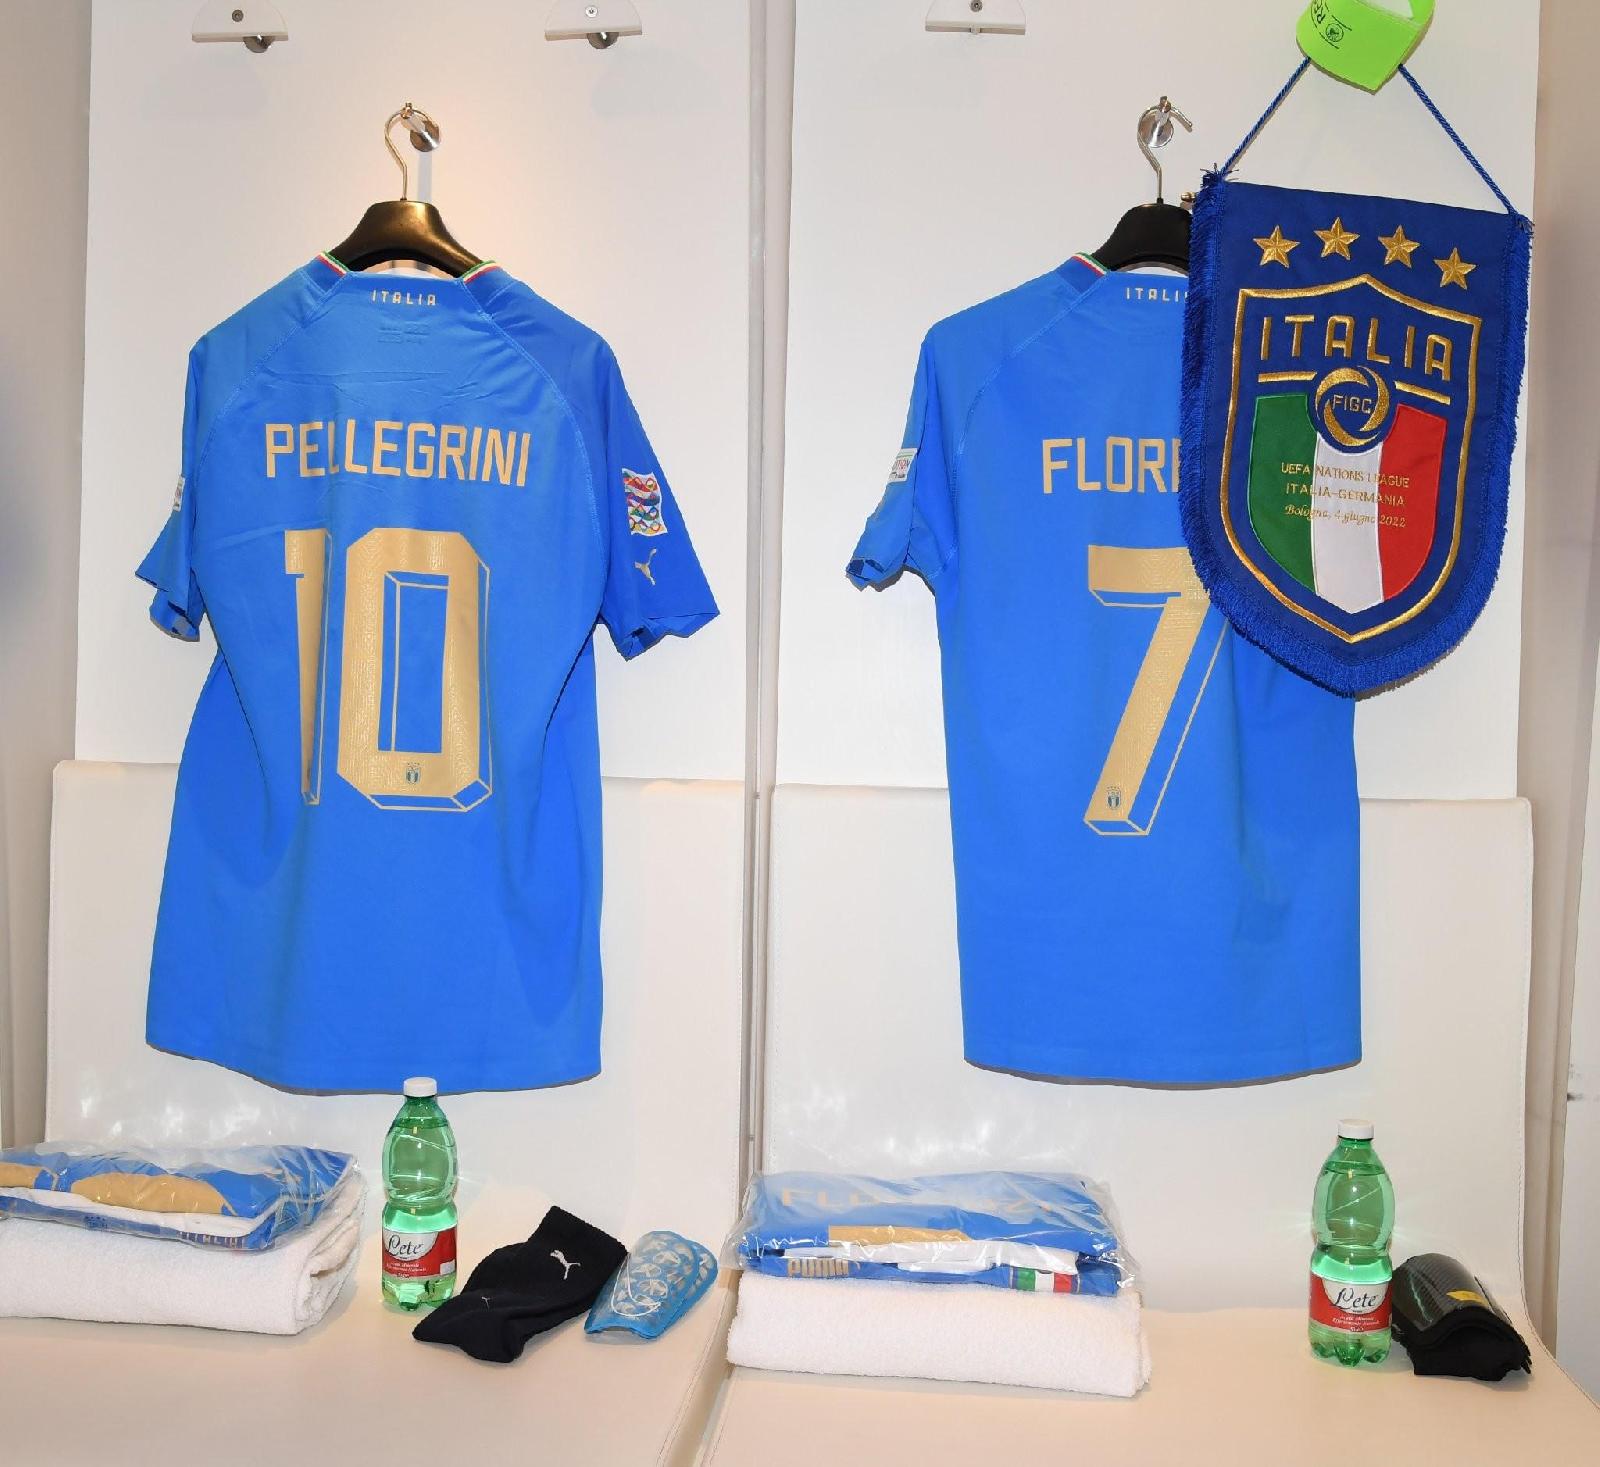 La maglia che indosserà stasera Pellegrini contro la Germania (profilo facebook Nazionale Italiana di Calcio)